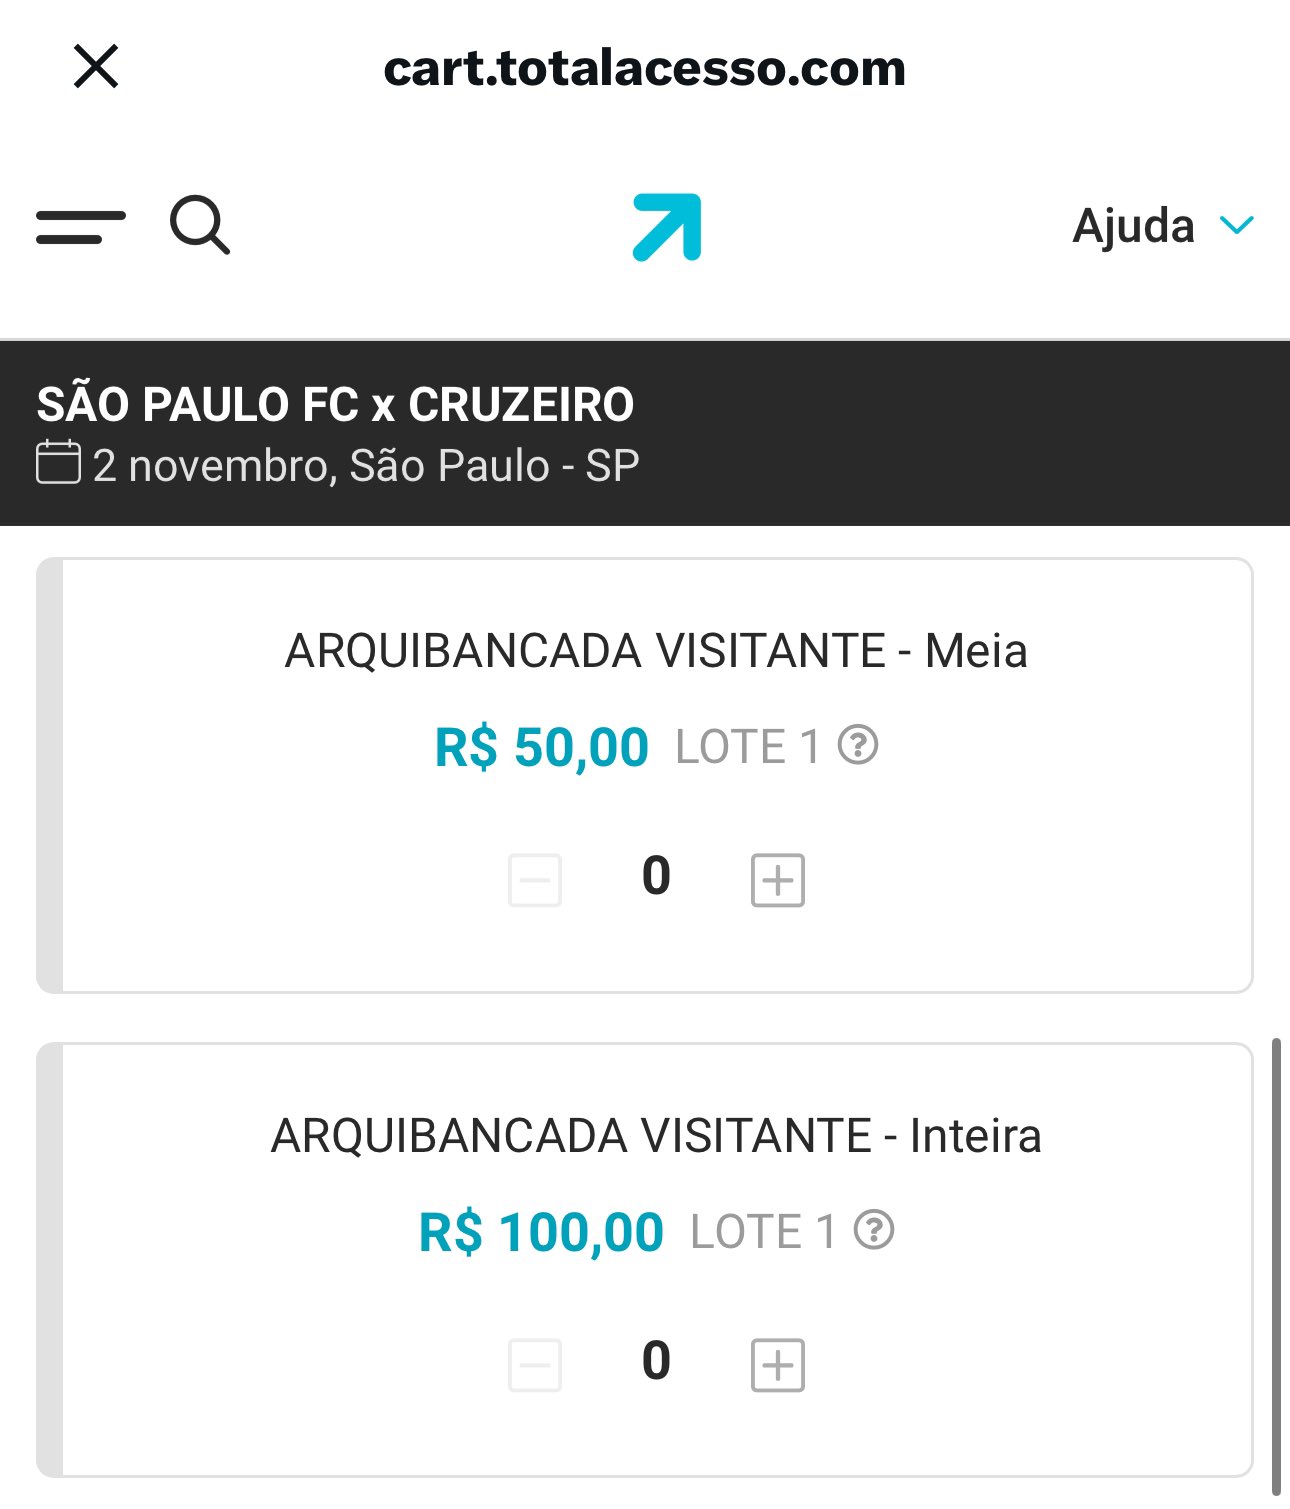 SÃO PAULO FC x CRUZEIRO é na Total Acesso.